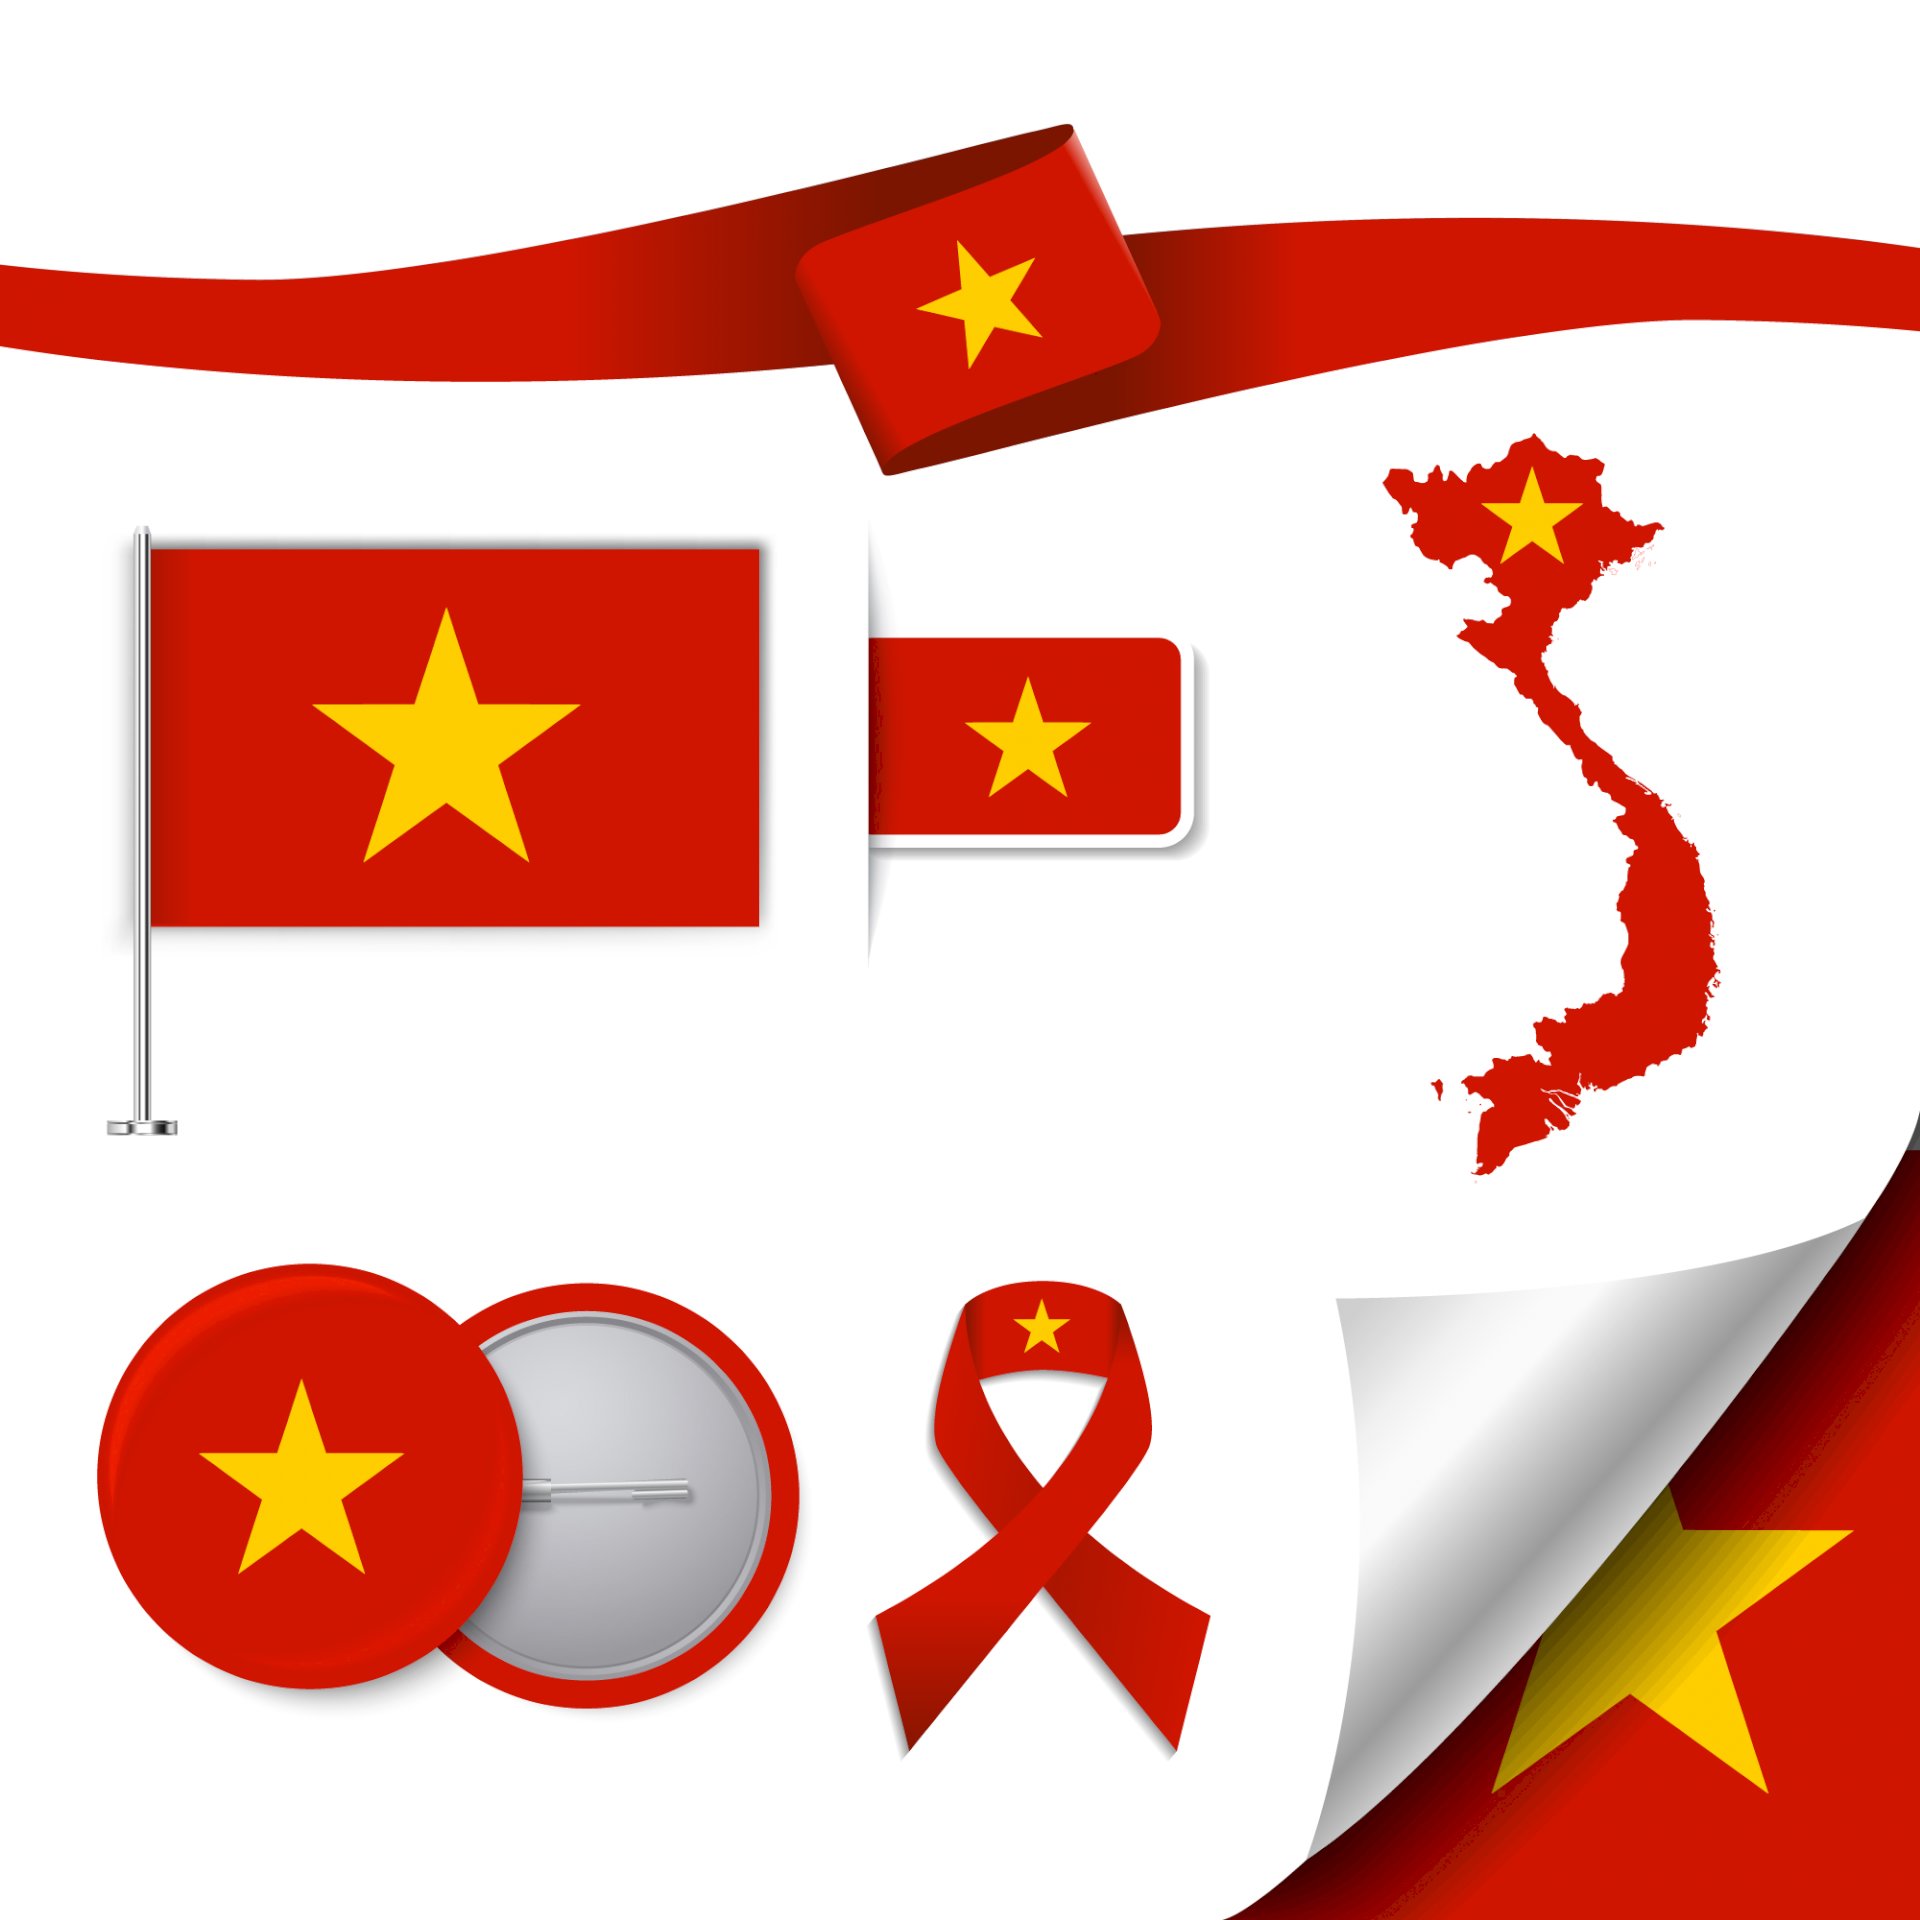 Logo lá cờ Việt Nam: Logo lá cờ Việt Nam là hình ảnh được rất nhiều doanh nghiệp và tổ chức sử dụng để thể hiện sự tôn trọng và yêu quý đất nước Việt Nam. Với sự kỳ công đầu tư trong thiết kế, các logo lá cờ Việt Nam ngày càng đa dạng và đẹp mắt. Hãy cùng đến khám phá hình ảnh về logo lá cờ Việt Nam để tìm kiếm cảm hứng cho thiết kế của bạn.